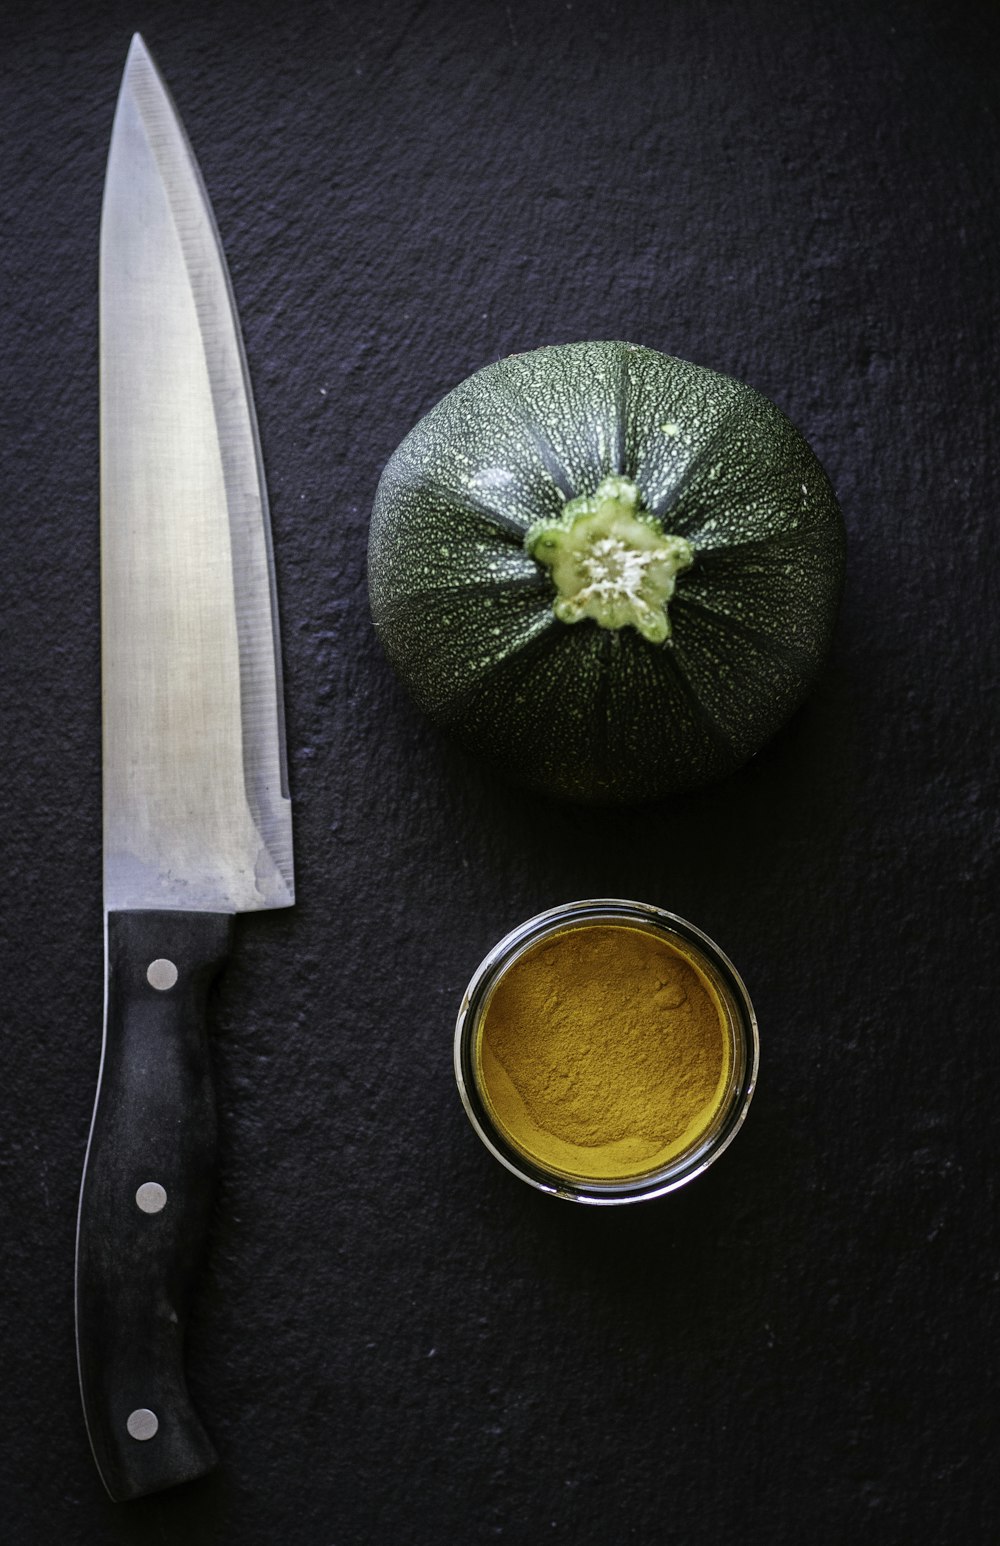 black handled knife beside green vegetable